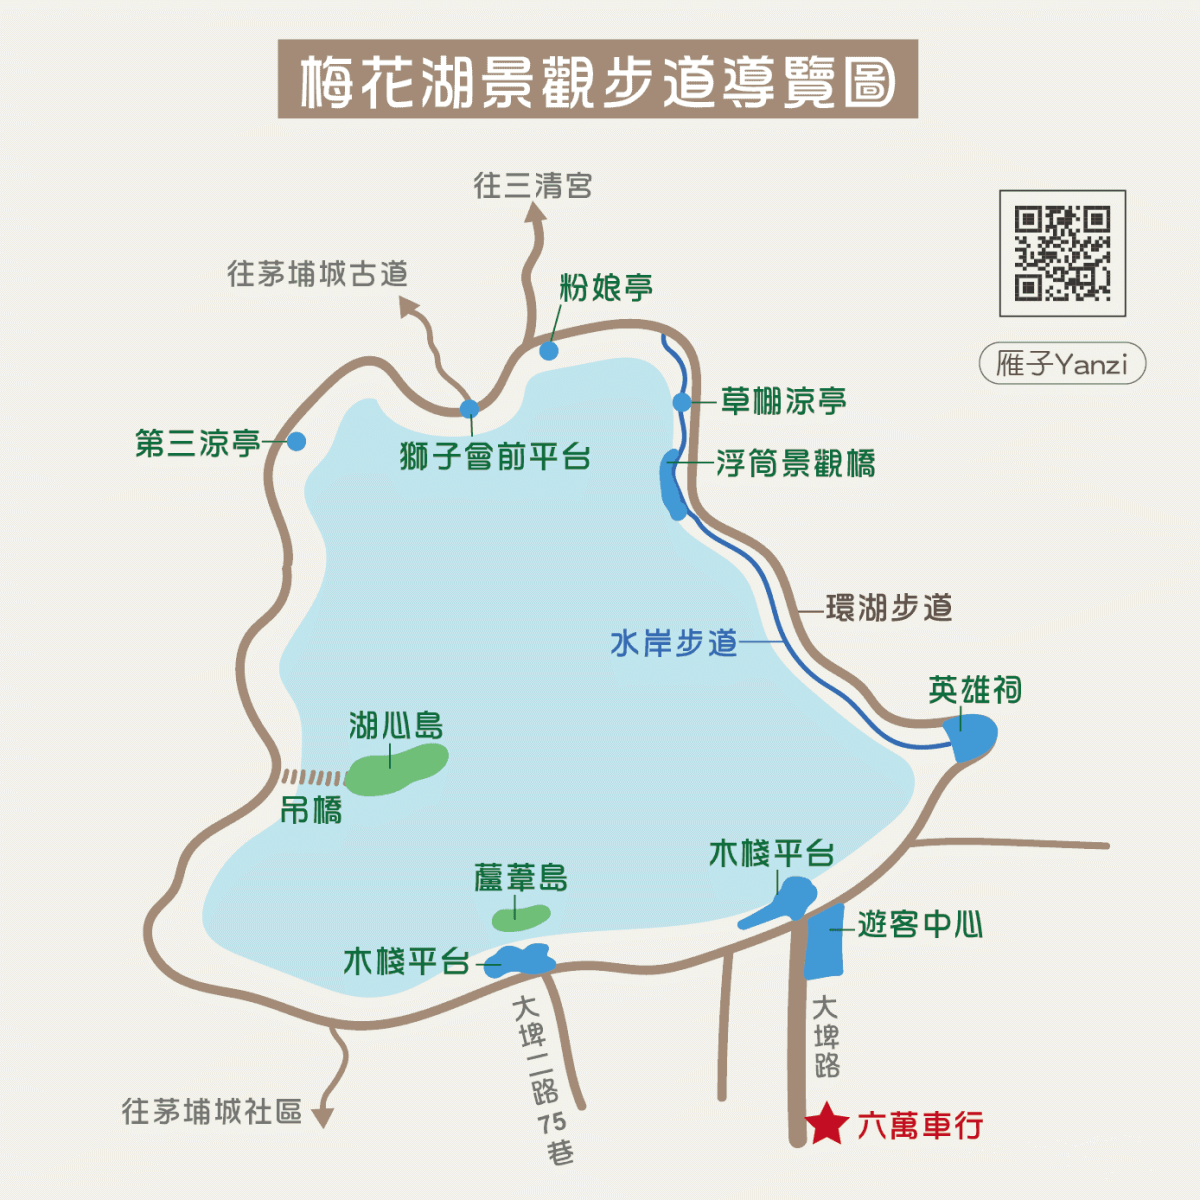 梅花湖景觀步道導覽圖 地圖